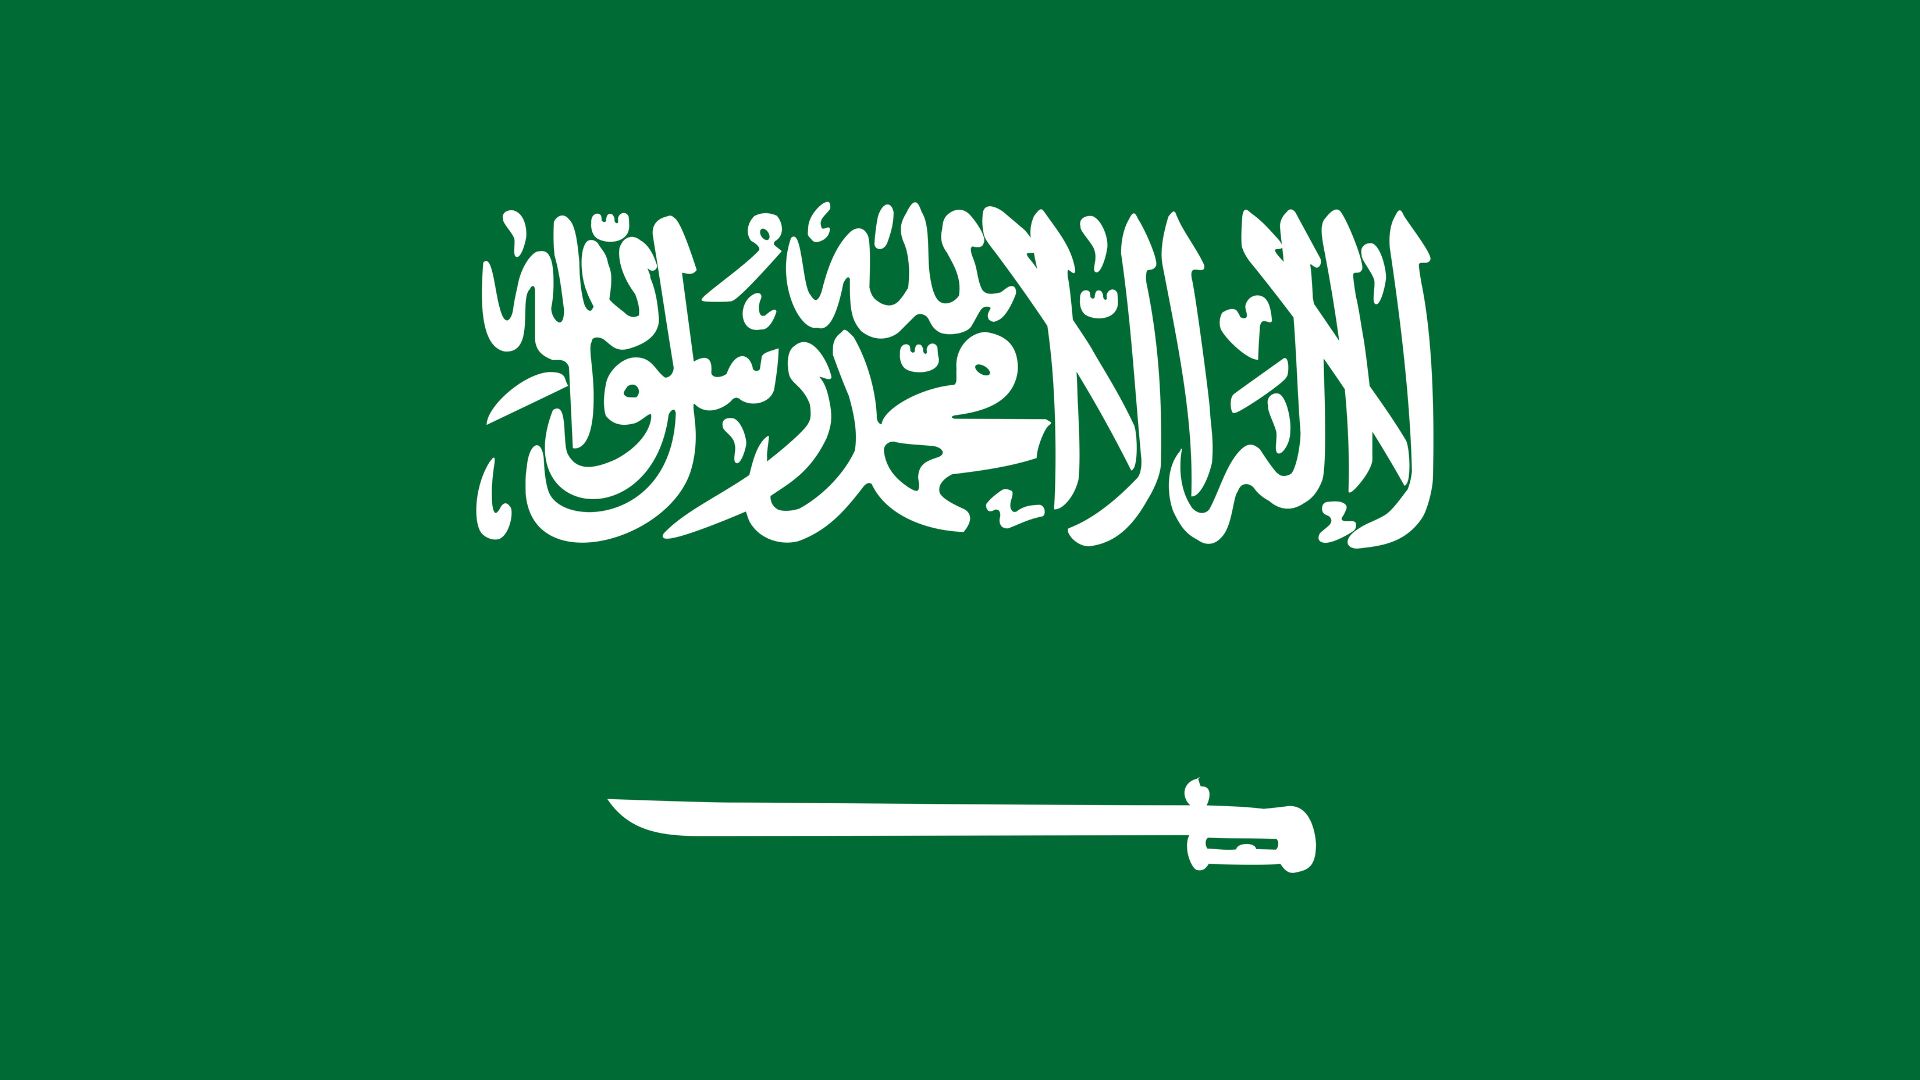 A bandeira da Arábia Saudita tem um desenho que consiste em um retângulo de cor verde com texto em caracteres árabes na cor branca sobre uma espada, também branca, com a lâmina voltada para o lado esquerdo.